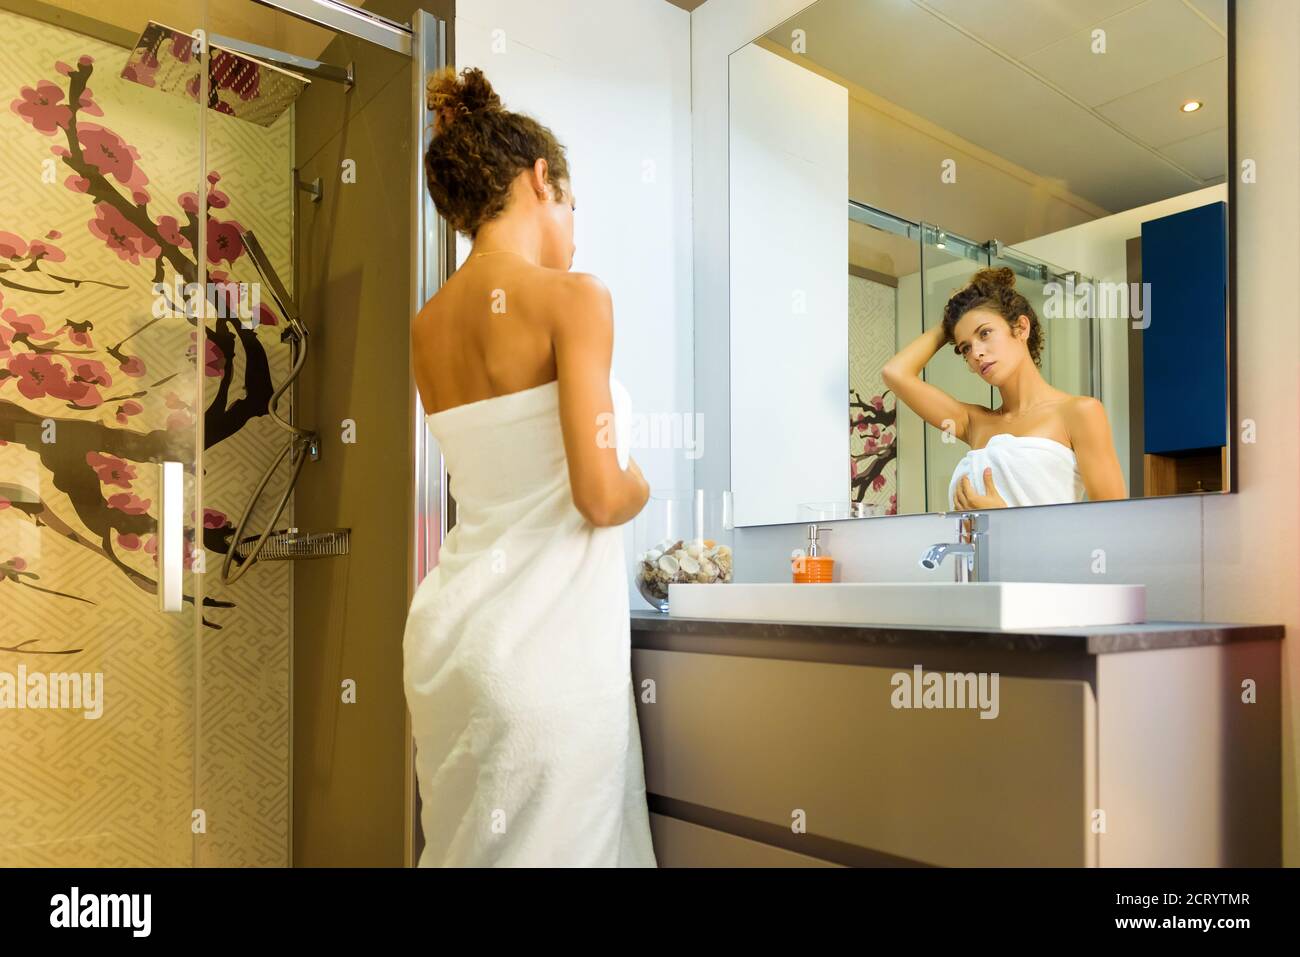 Junge Frau eingewickelt in ein sauberes weißes Handtuch stehend suchen Bei sich im Badezimmerspiegel mit der Hand zu Ihr Log-Haar, als sie sich auf eine Show vorbereitet Stockfoto